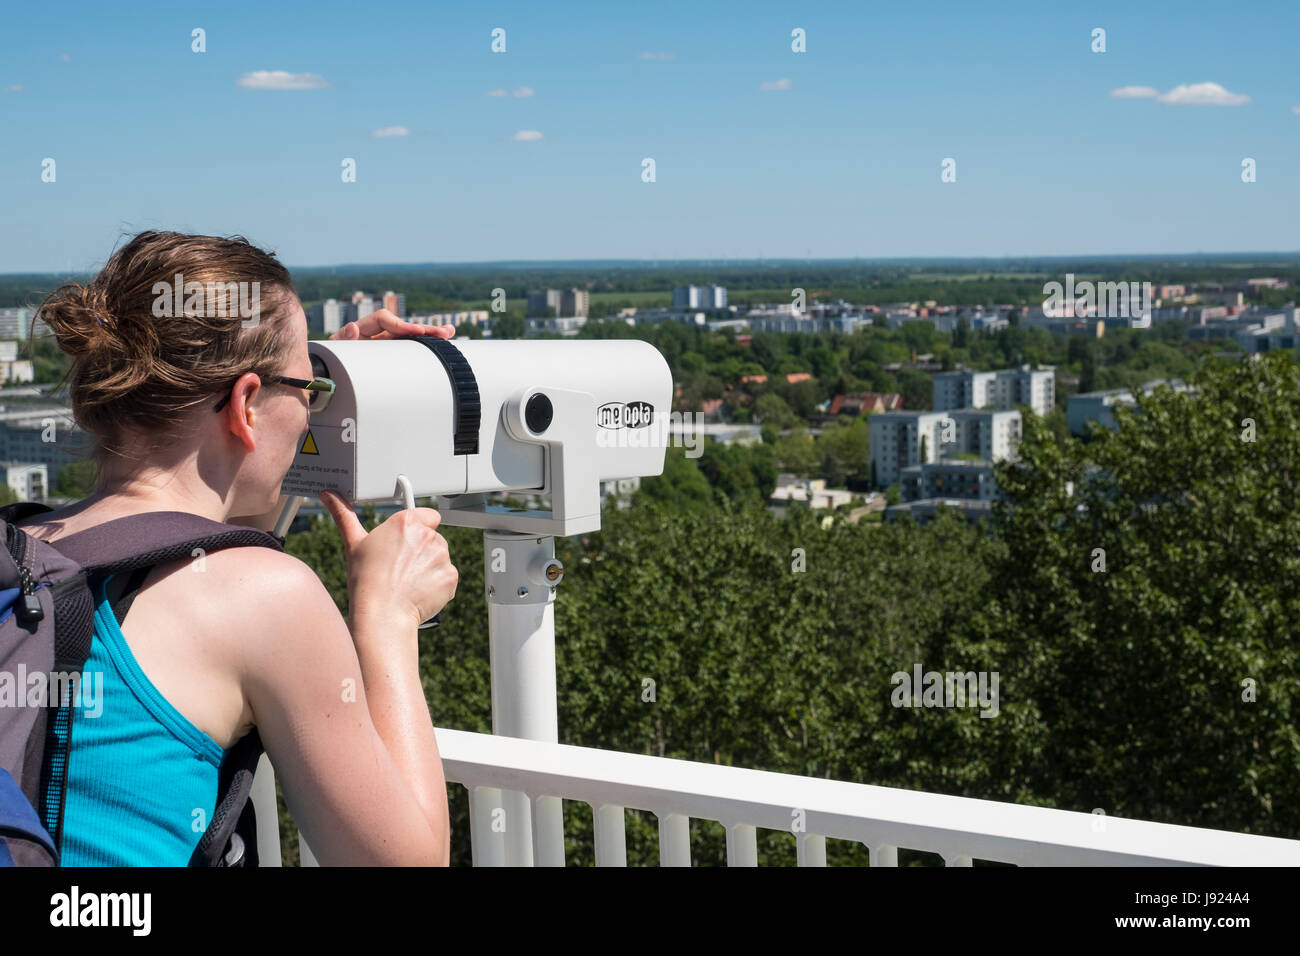 Besucher auf die Aussichtsplattform am IGA 2017 internationales Gartenfestival (internationale Garten Ausstellung) in Berlin, Deutschland Stockfoto